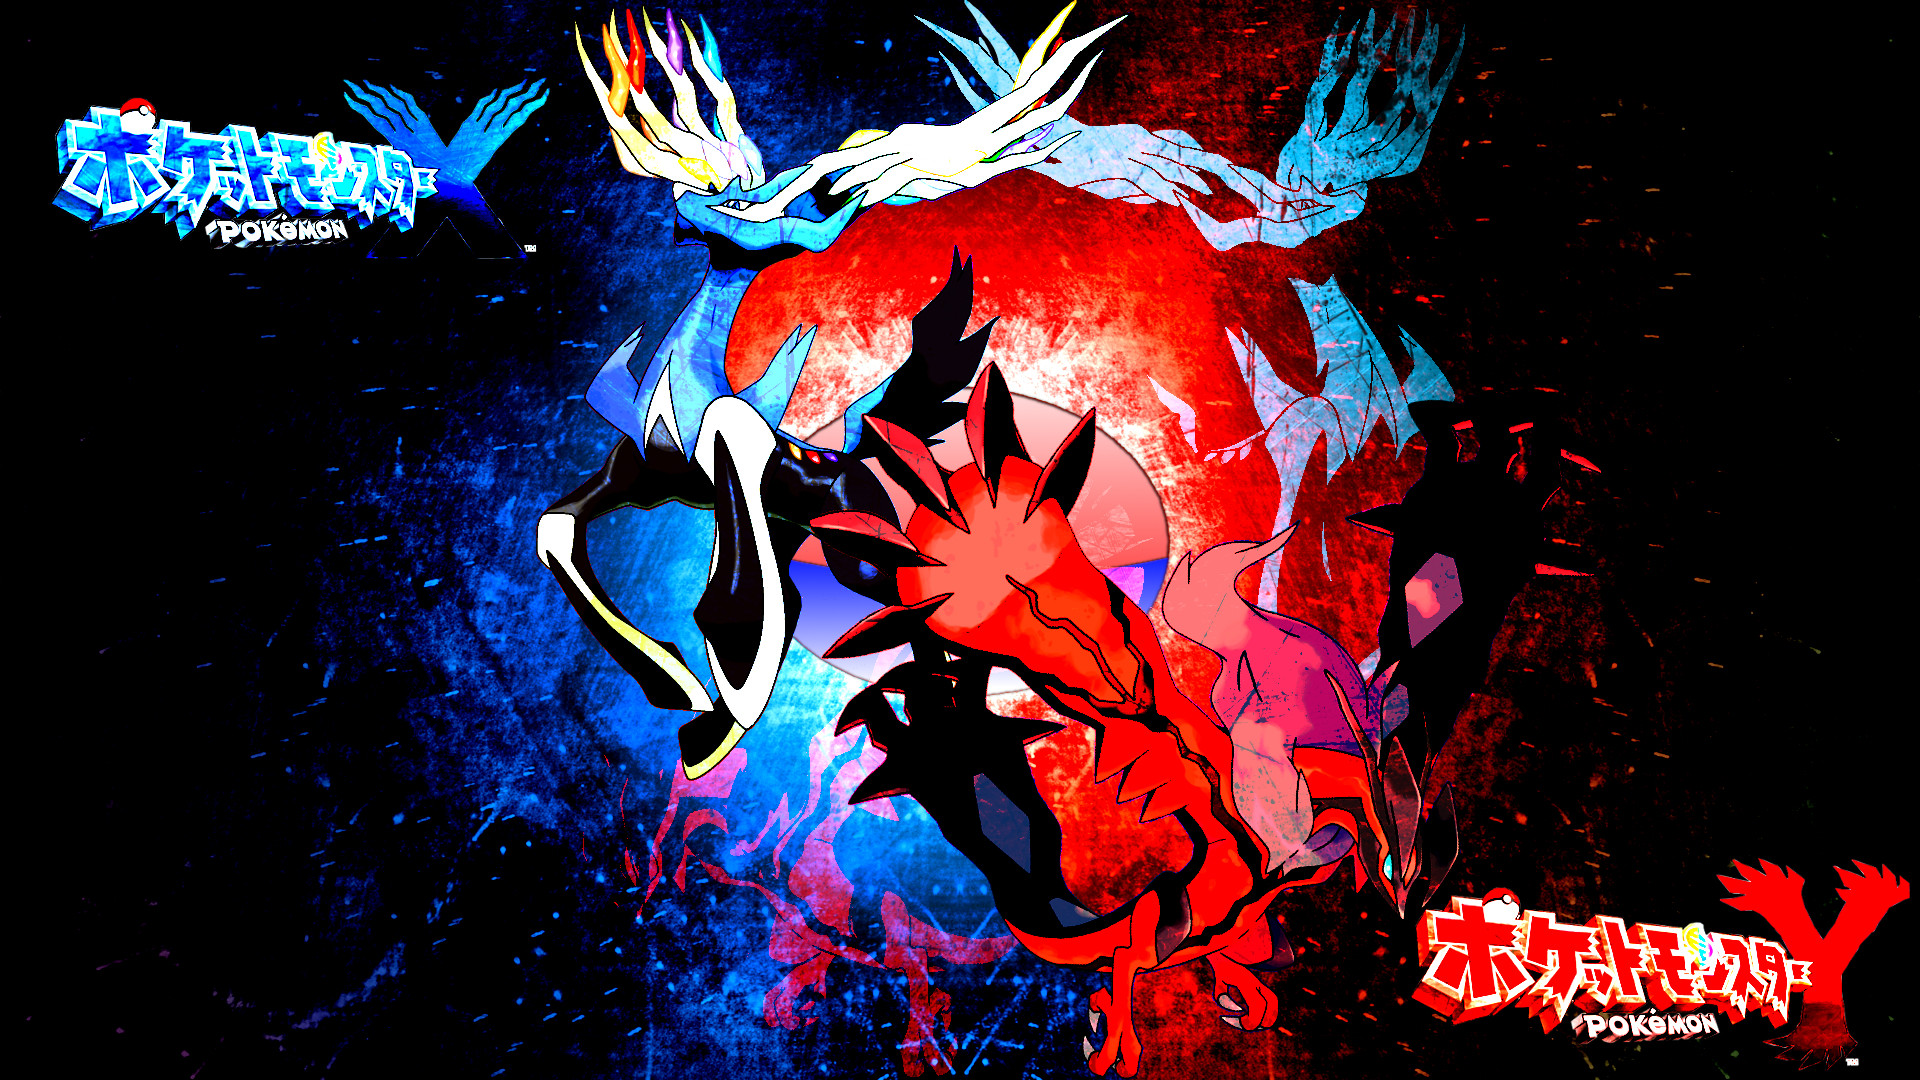 Legendary-Pokemon-image-legendary-pokemon-36184599-1920-1080.